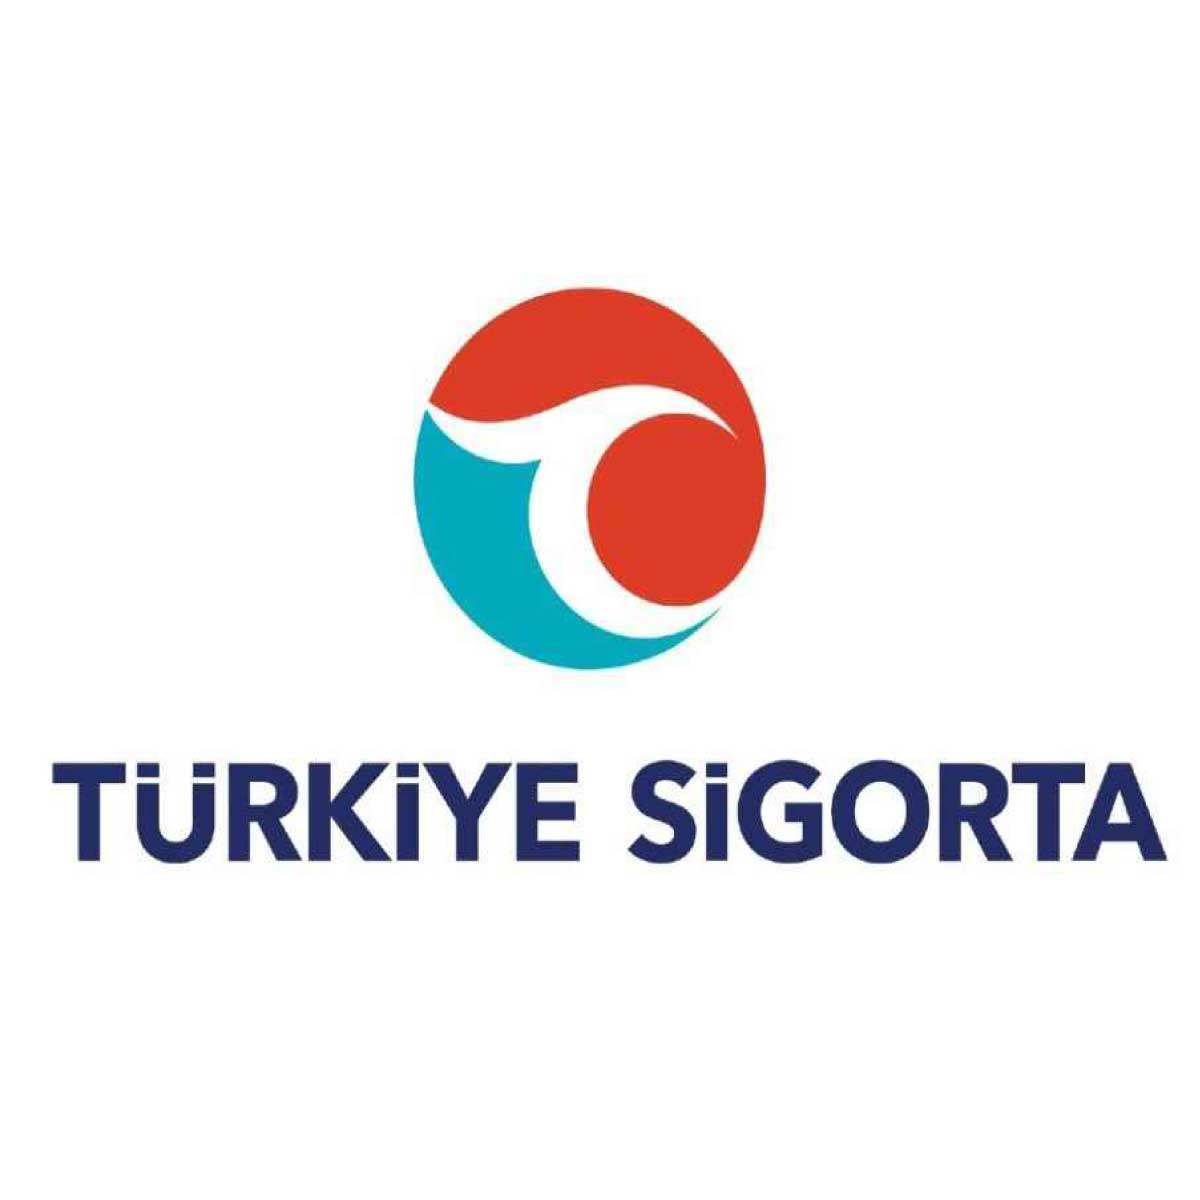 Türkiye'nin En İyi Sigorta Şirketleri Türkiye Sigorta